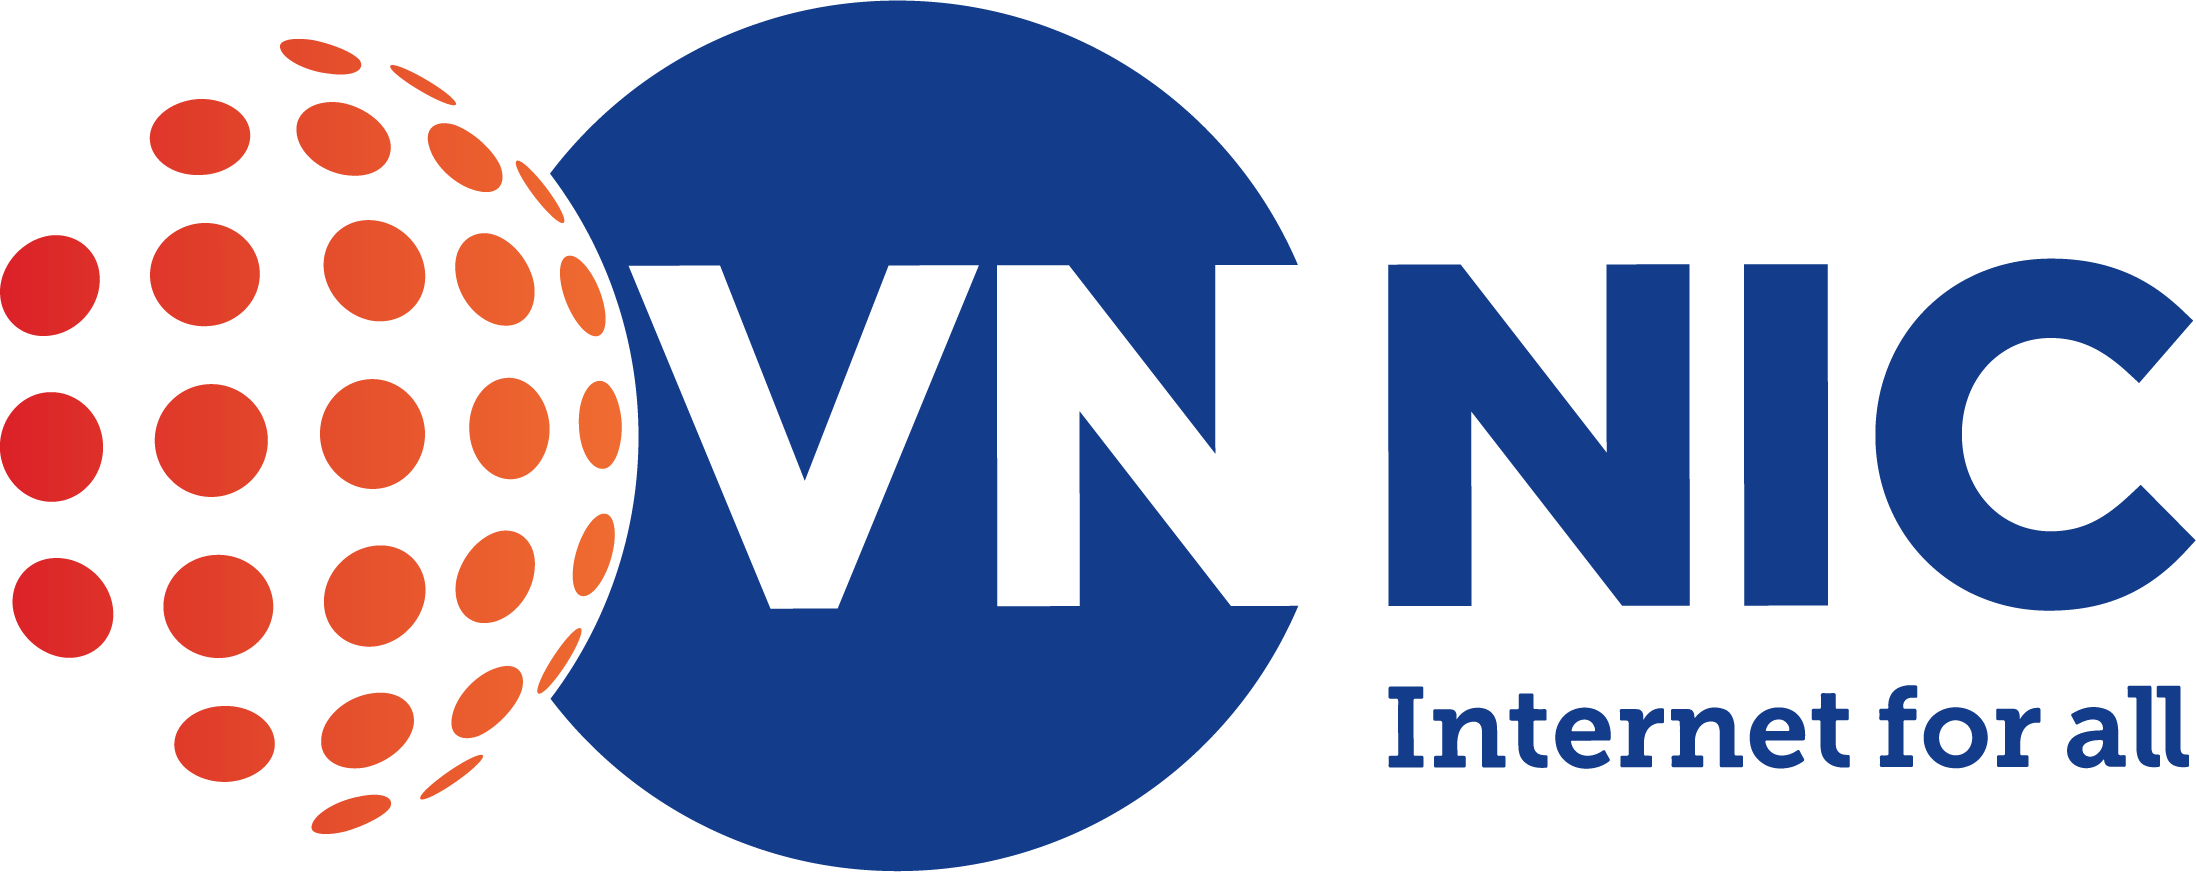 VNNIC-logo